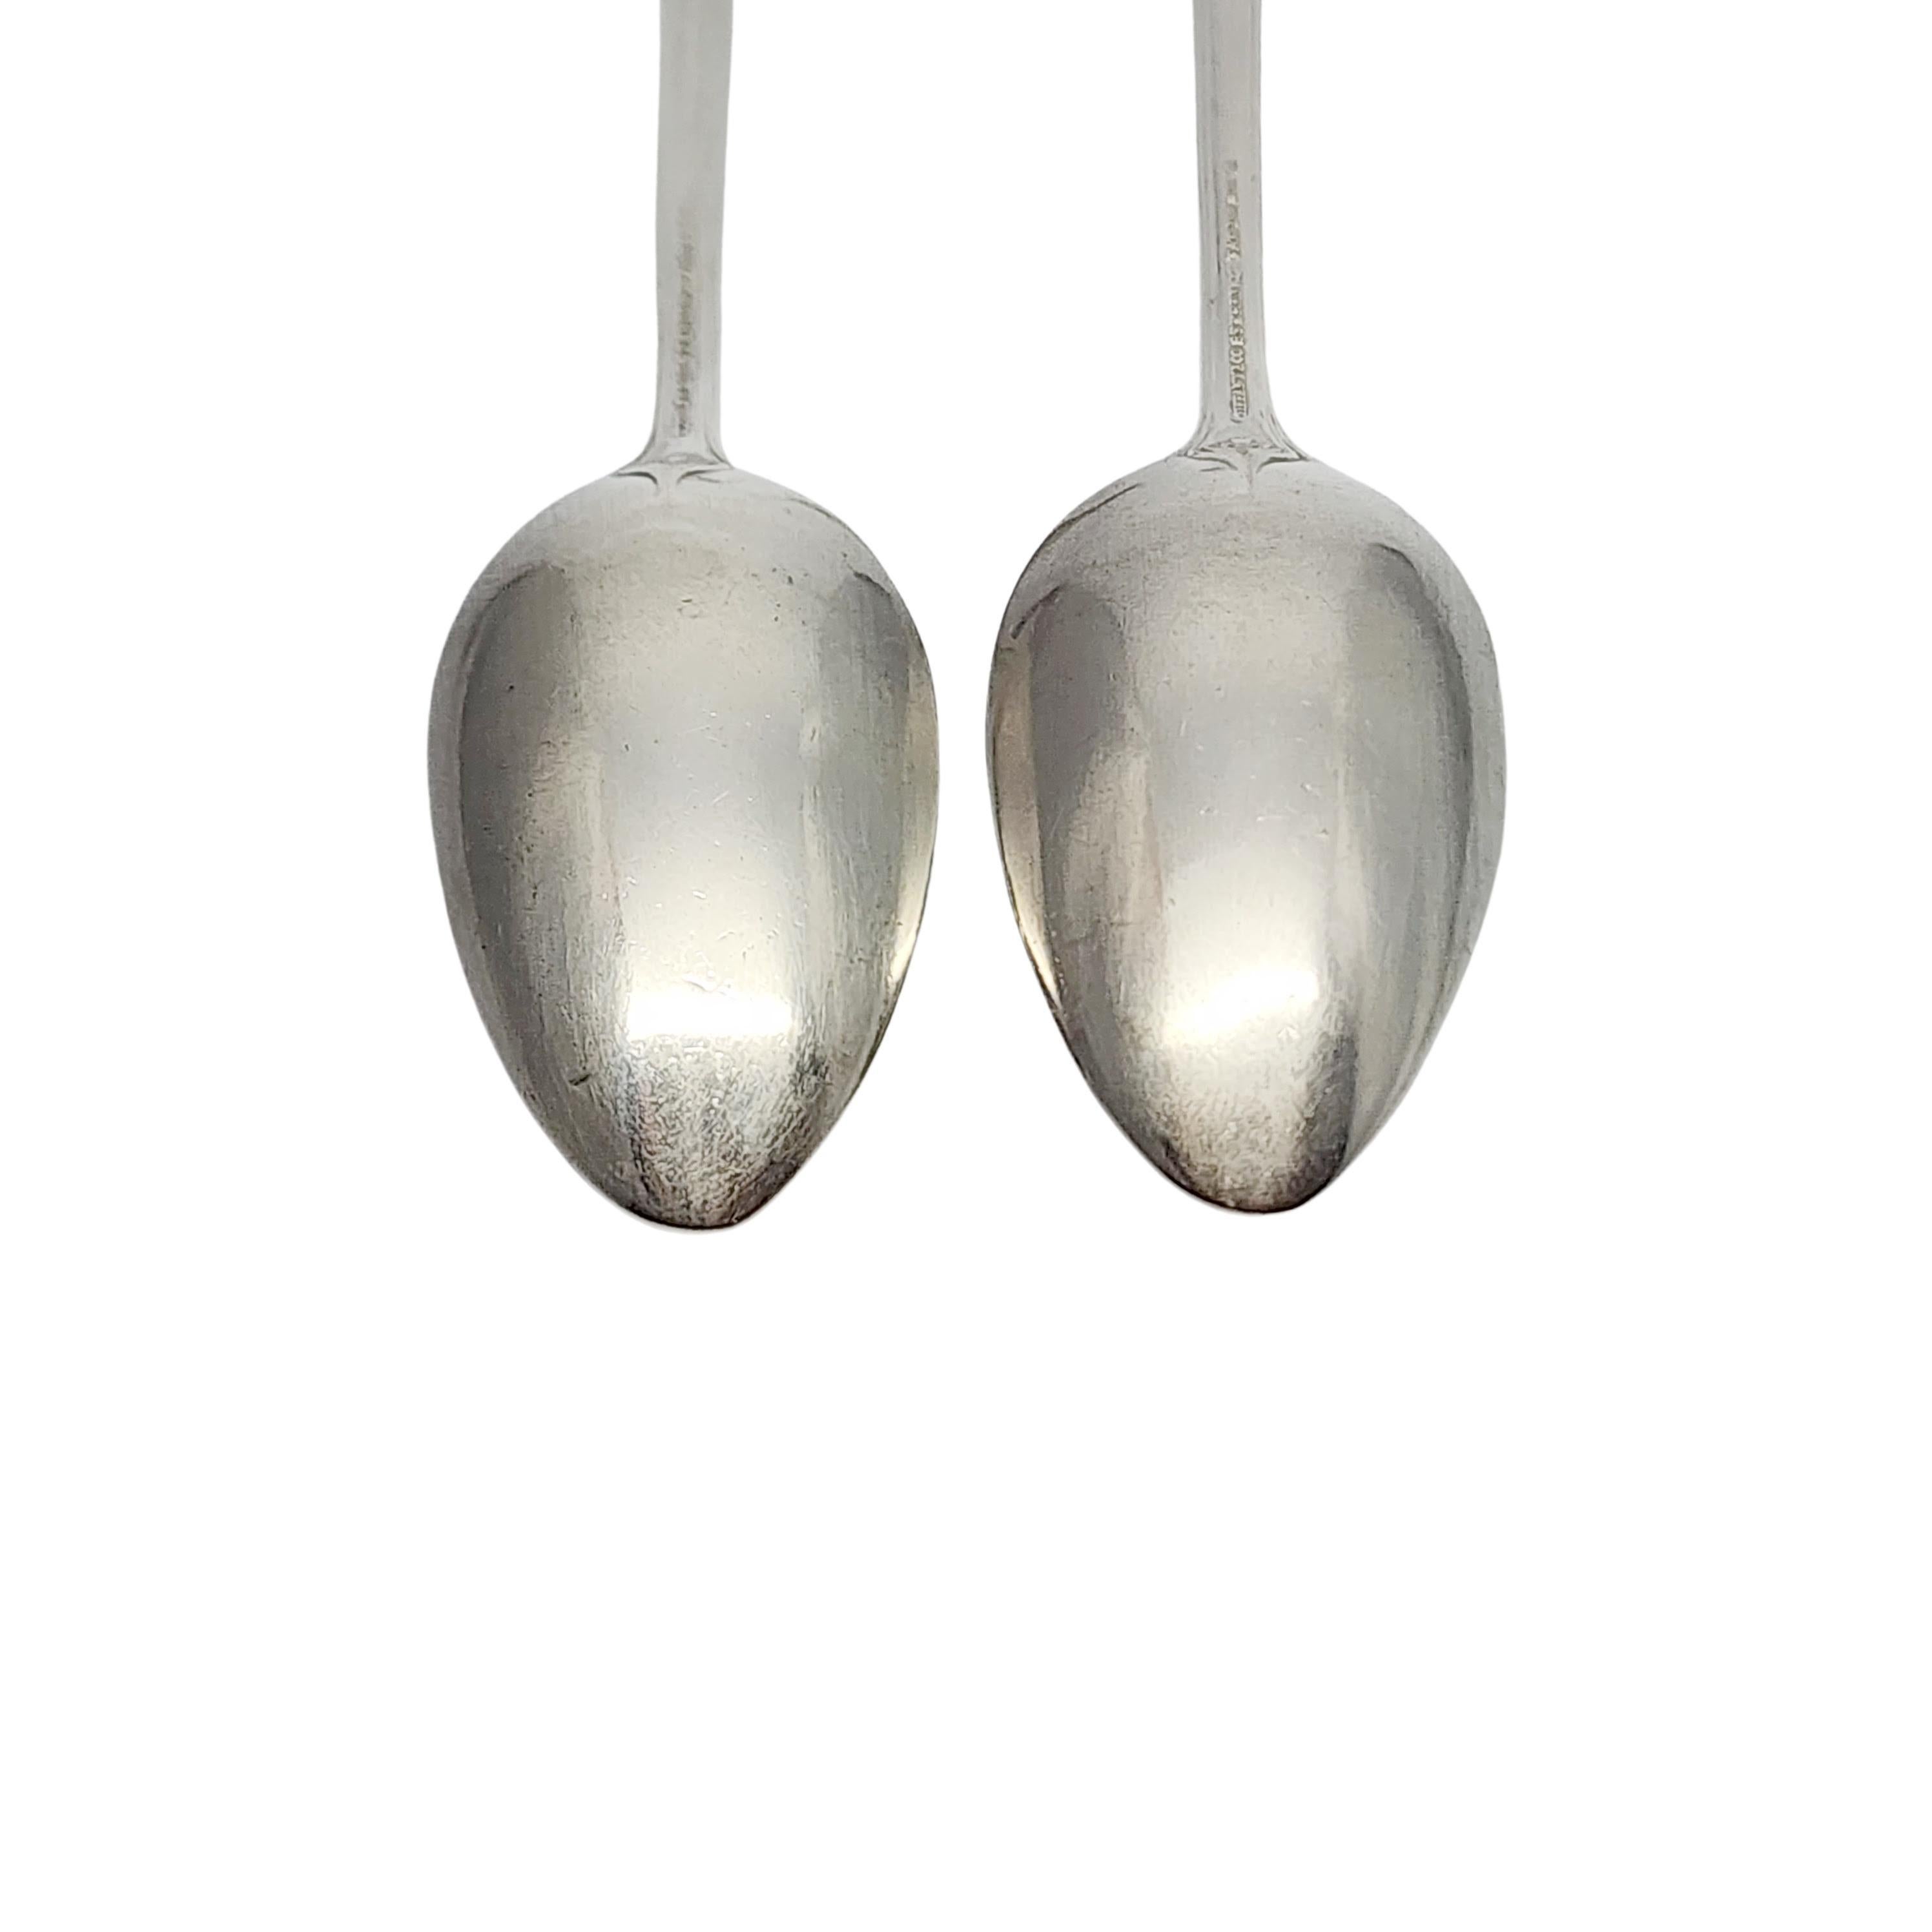 Set of 2 Tiffany & Co St Dunstan Sterling Silver Teaspoons w/mono 5 7/8